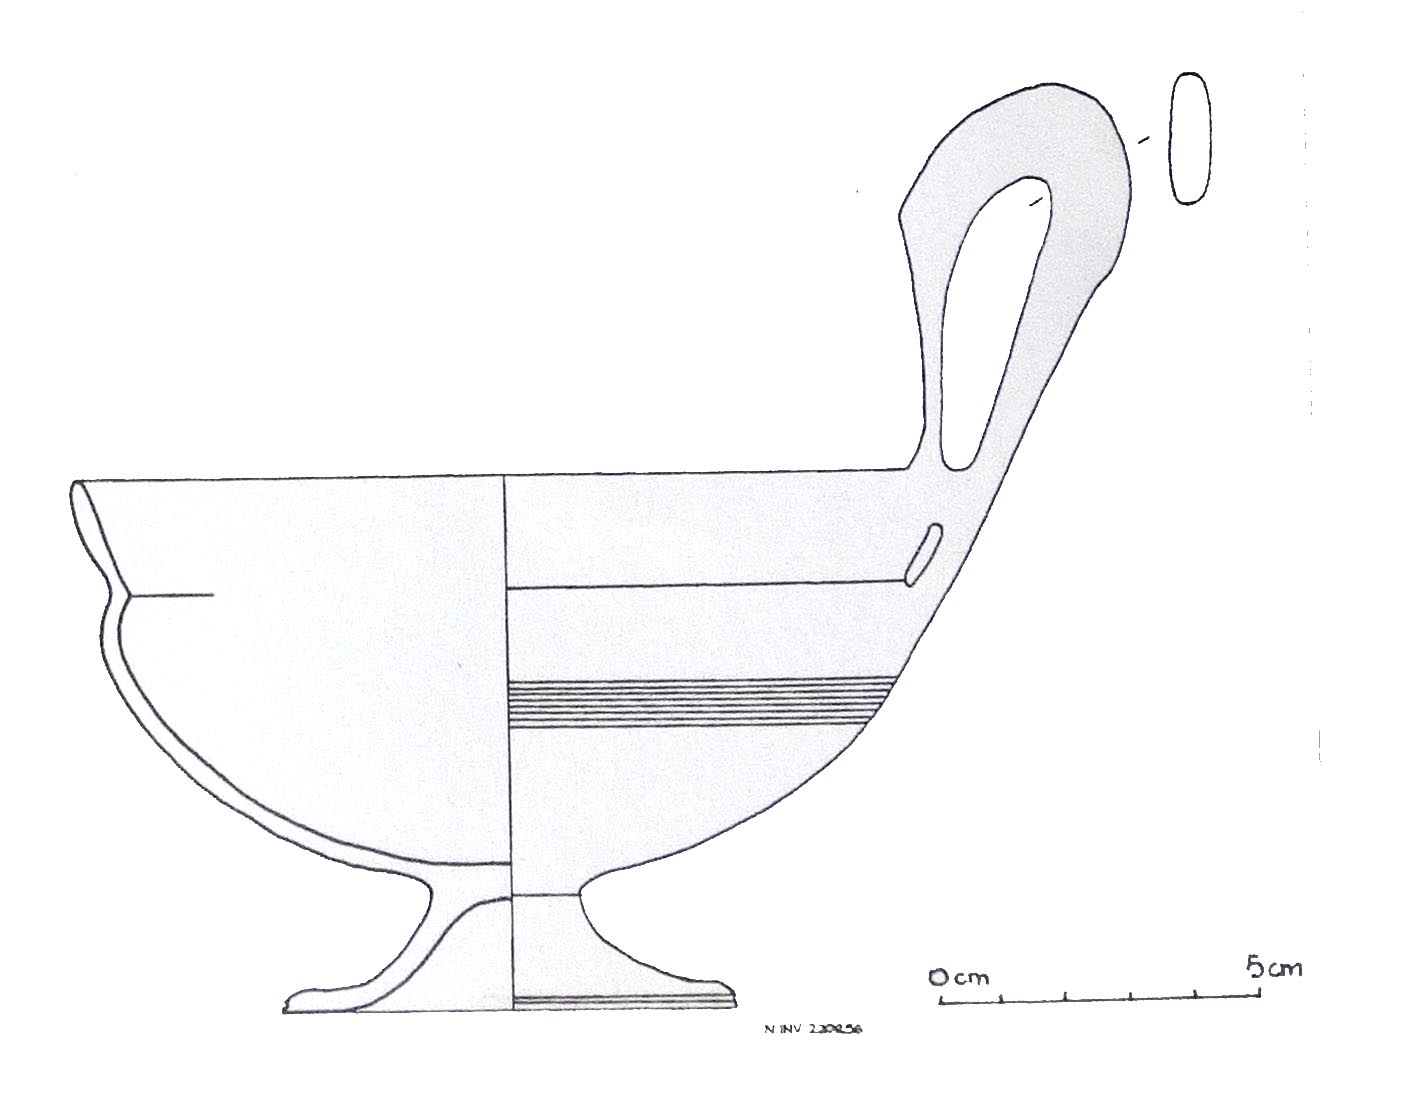 kyathos, Rasmussen 4b - ambito etrusco meridionale (sec. VII-VI a.C)